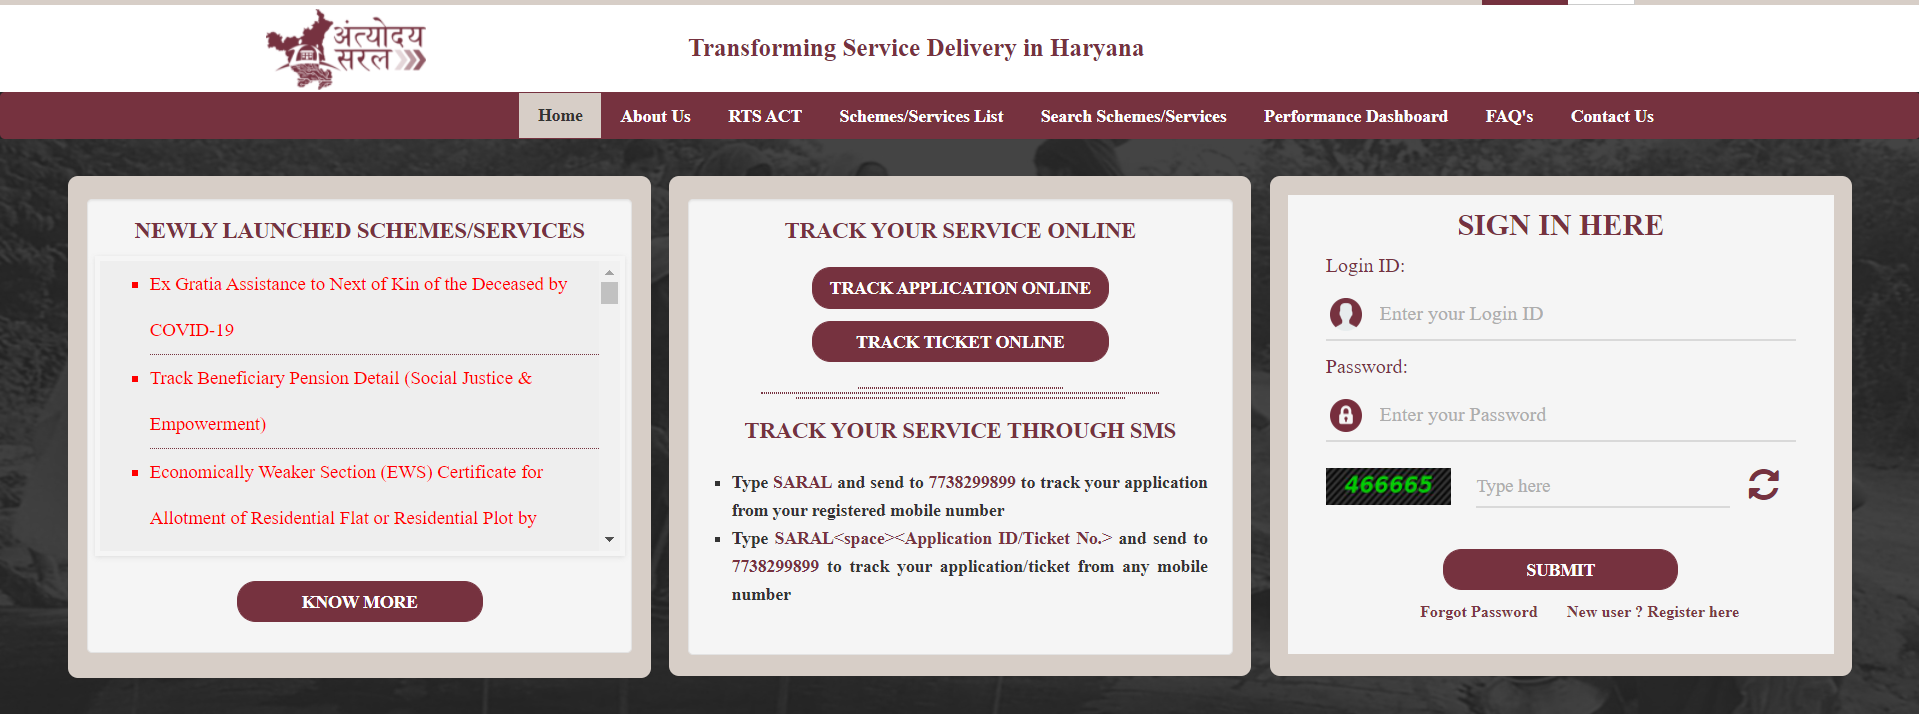 saral haryaana web portal